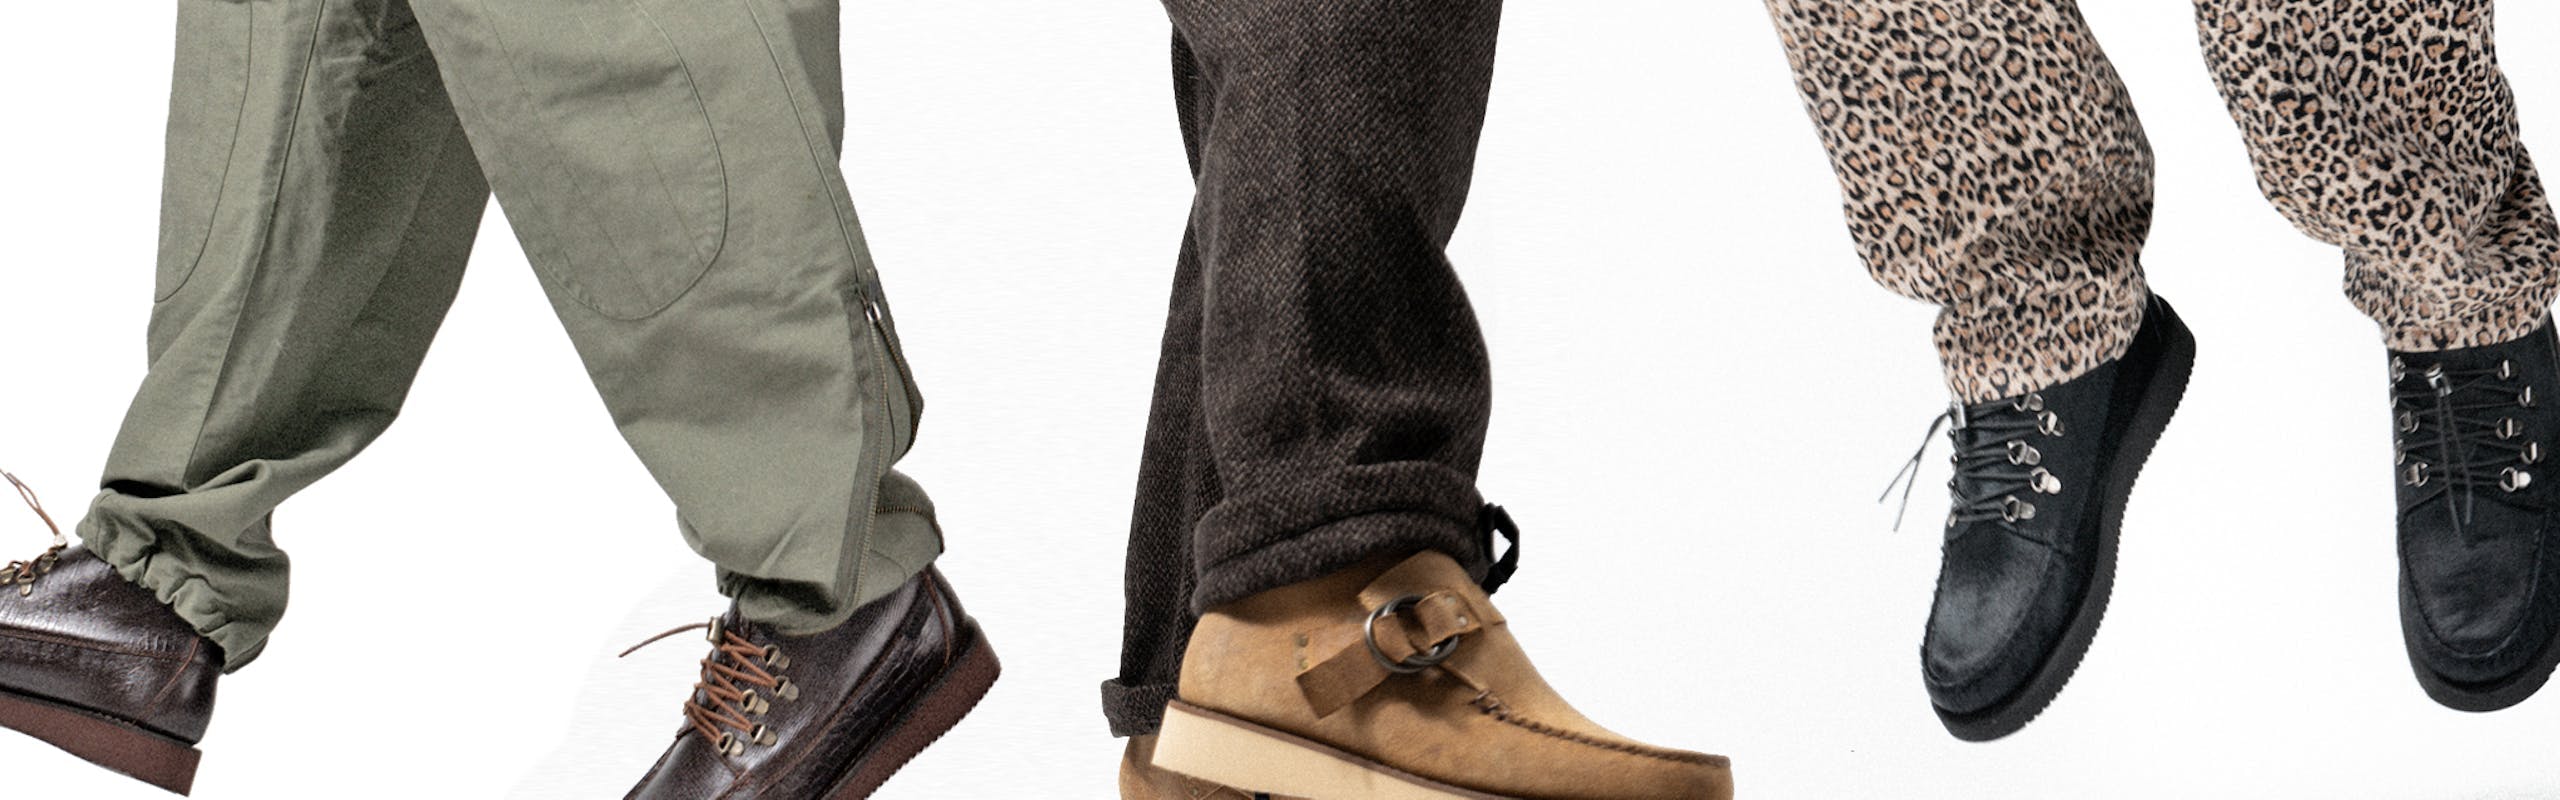 I nuovi modelli di scarpe Sebago per l'inverno in collab con Engineered Garments